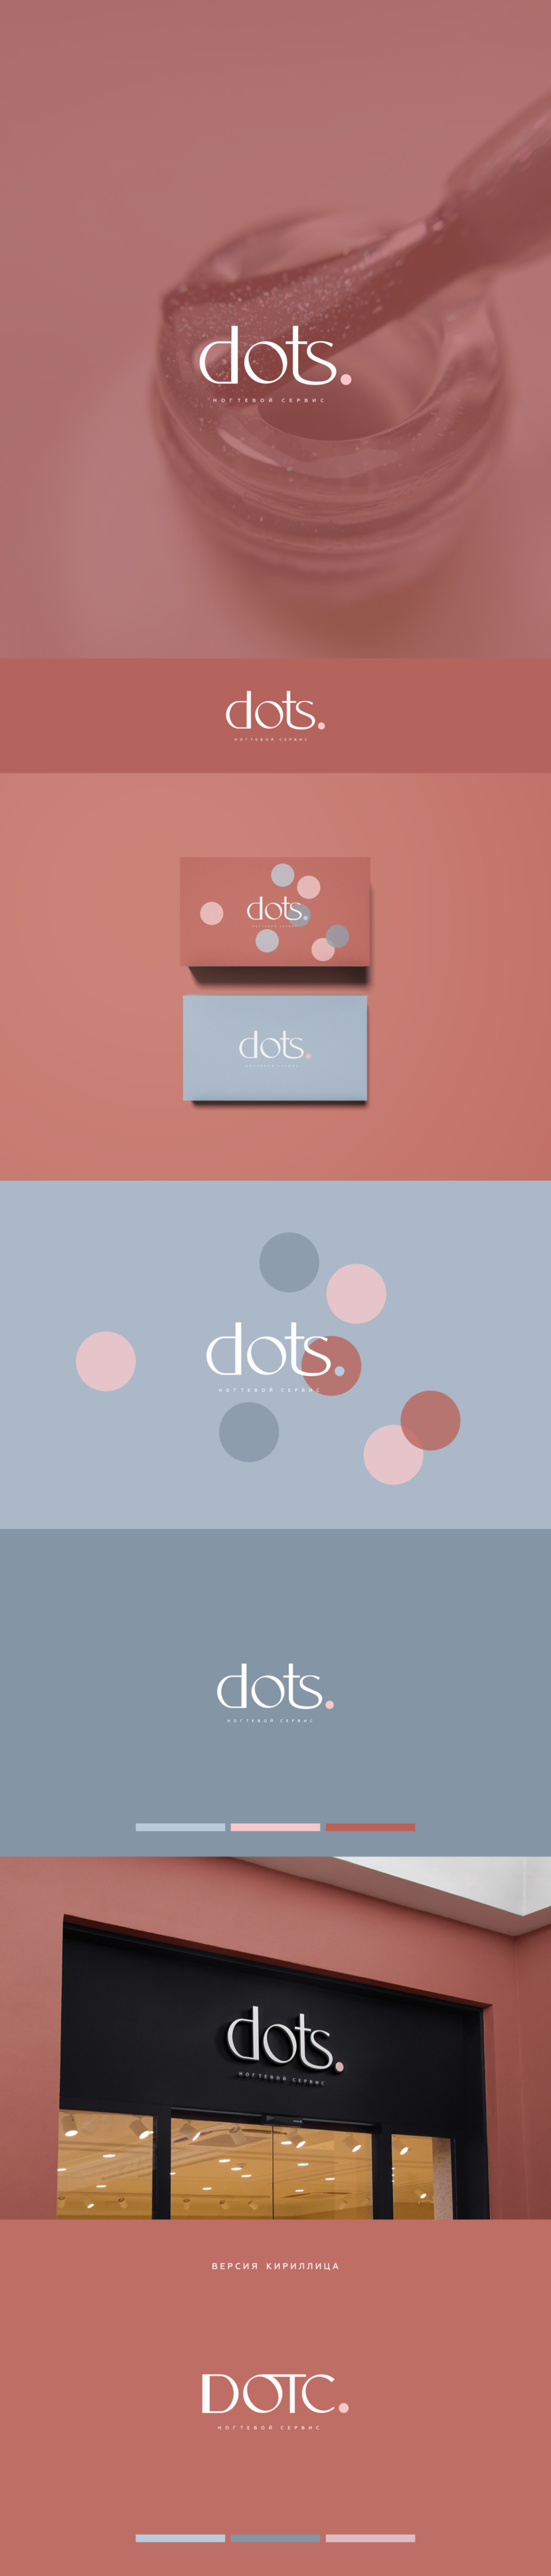 DOTS logo concept 2 - Разработка логотипа для студии ногтевого сервиса 'dots'